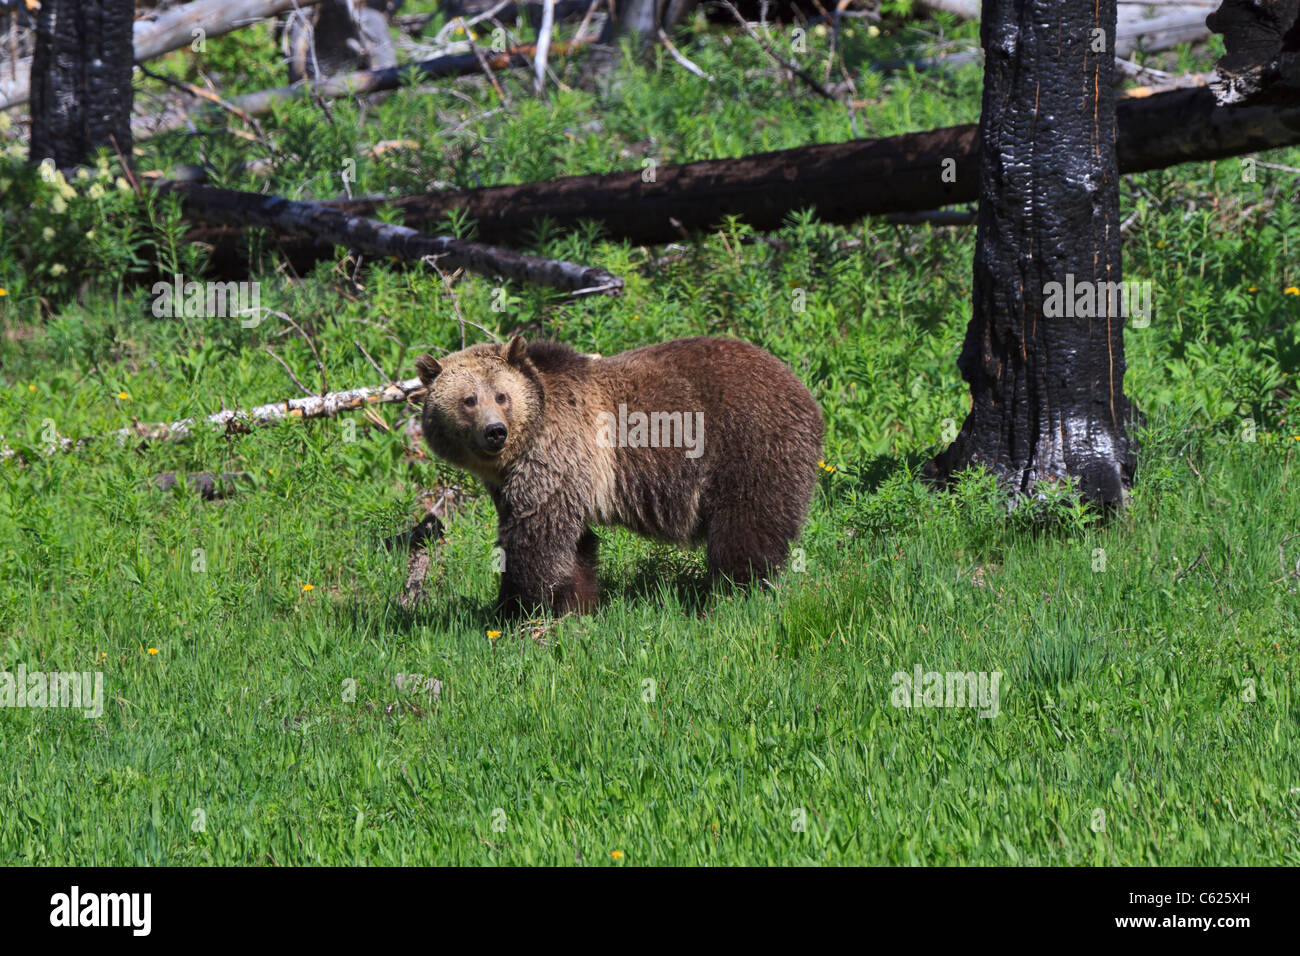 Grizzly Bear, Ursus arctos horribilis. Un oso grizzly en una zona de regeneración de incendios forestales en el Parque Nacional de Yellowstone. Foto de stock